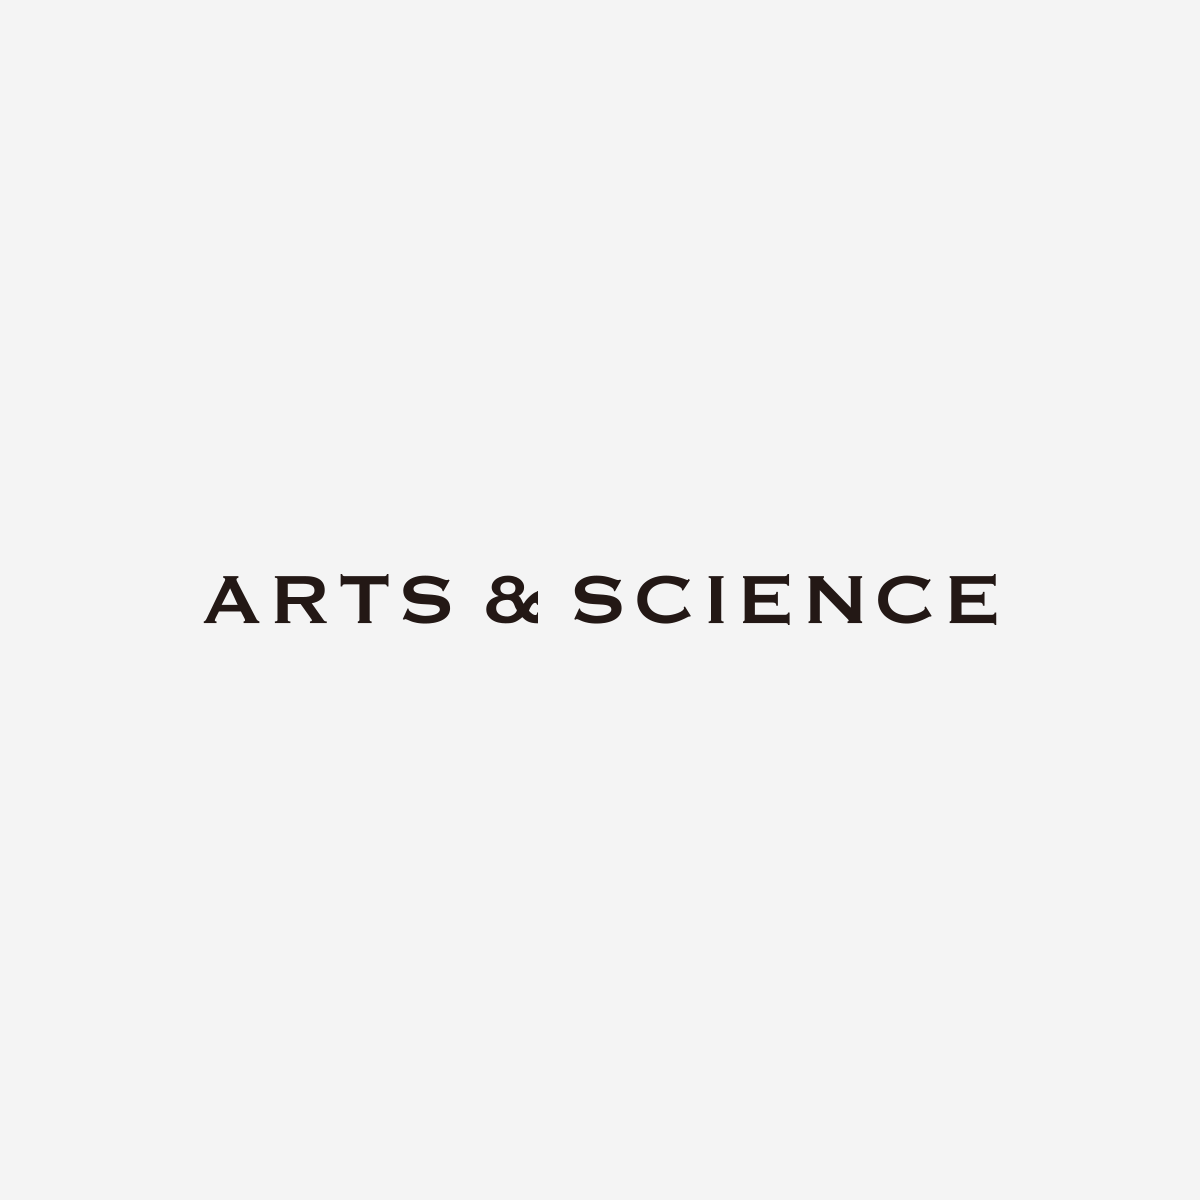 ARTS&SCIENCE